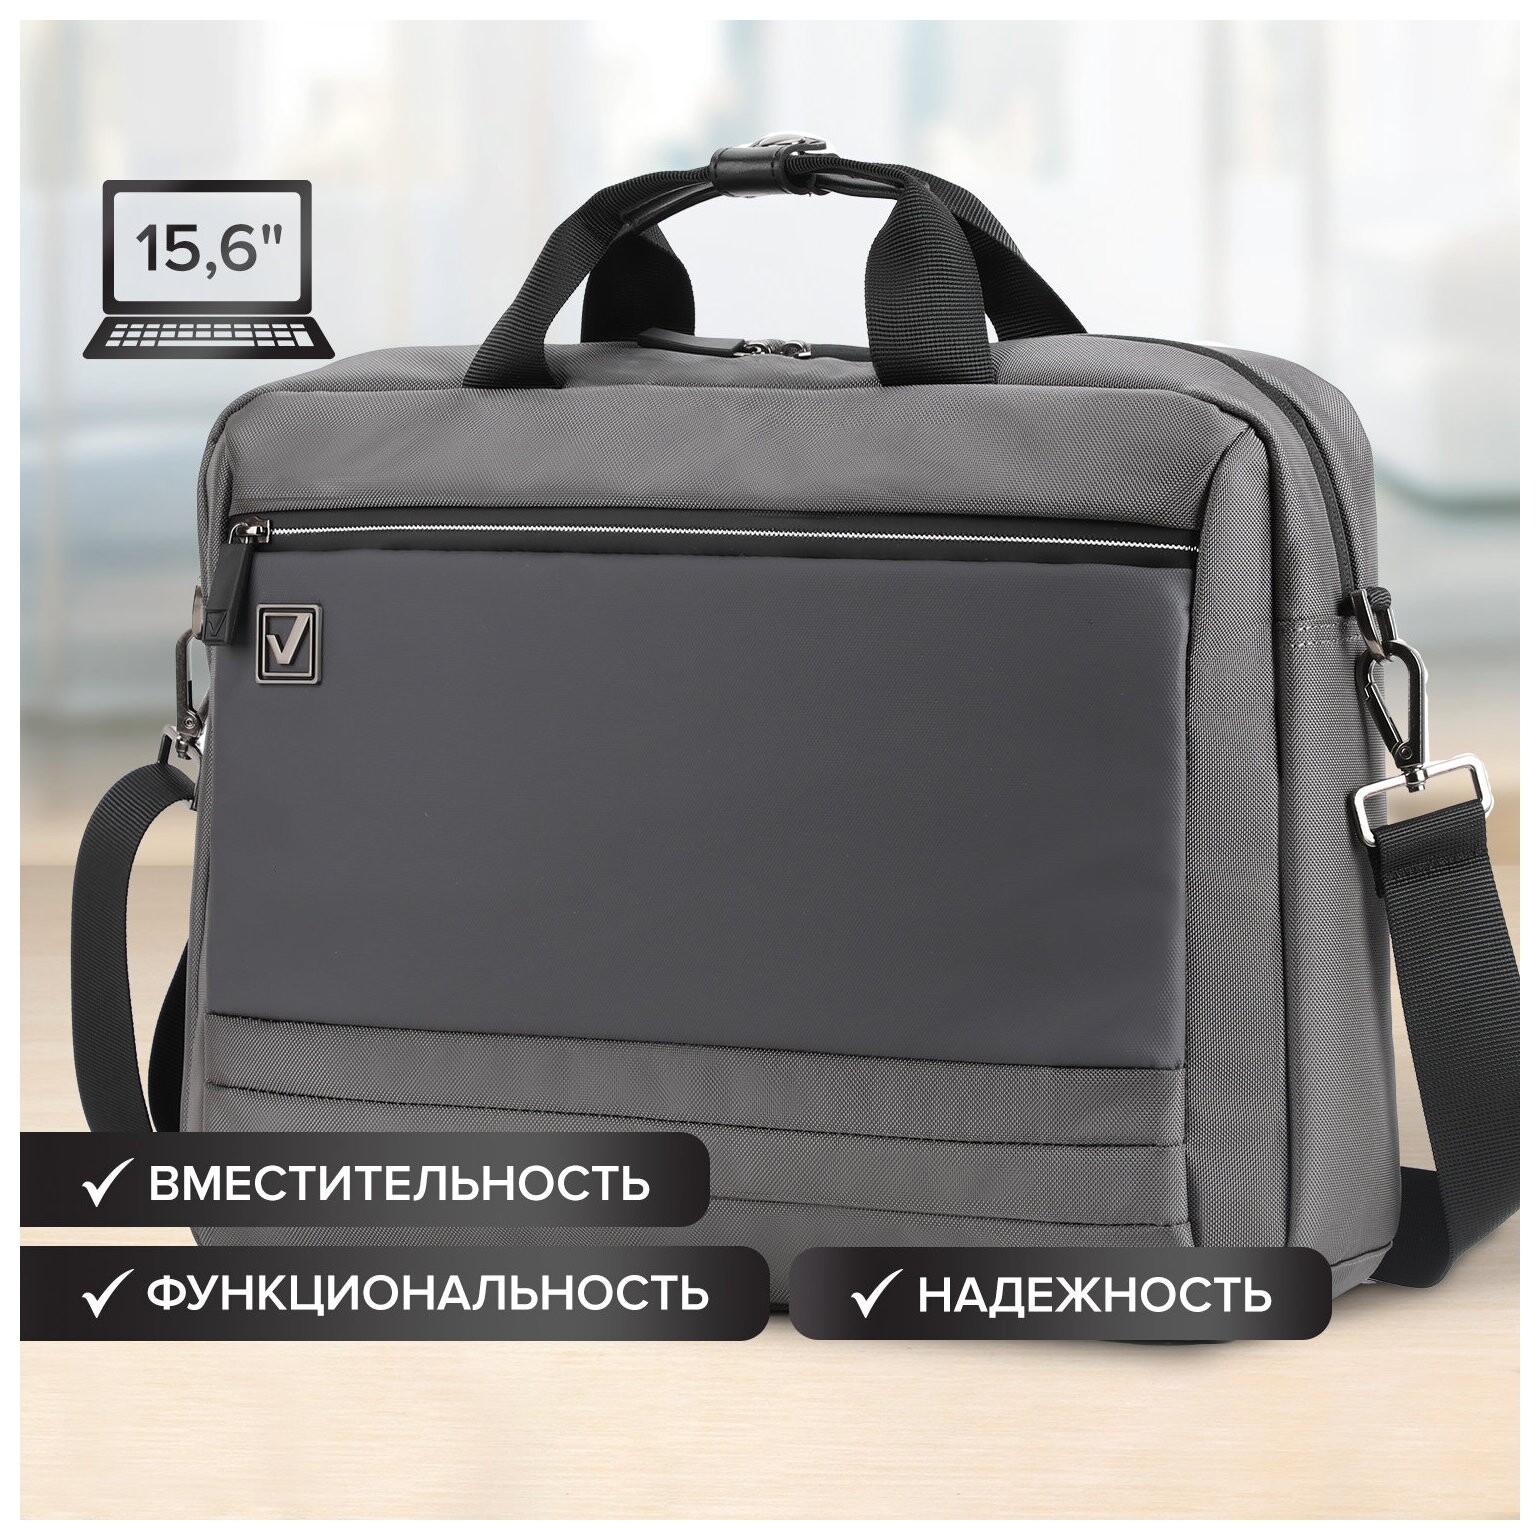 Сумка портфель Brauberg Expert с отделением для ноутбука 15,6, 2 отделения, серая, 30х40х12 см, 270825 Brauberg